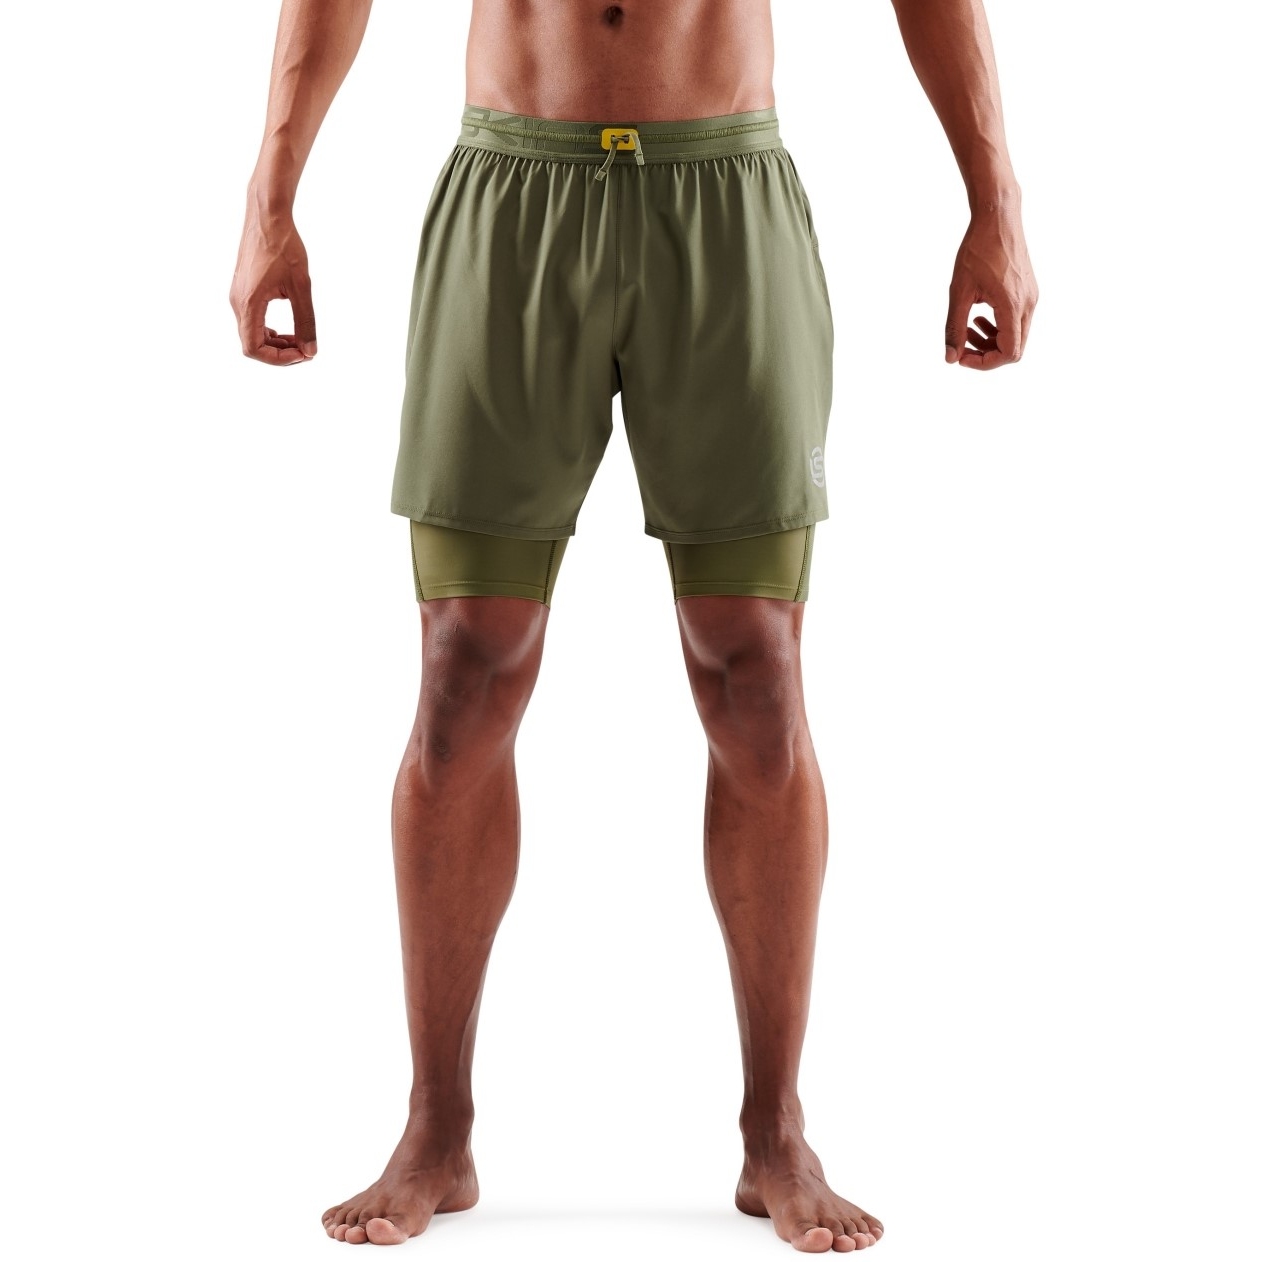 Foto de SKINS 3-Series Superpose Pantalones Cortos Fitness 2en1 Hombre - Khaki